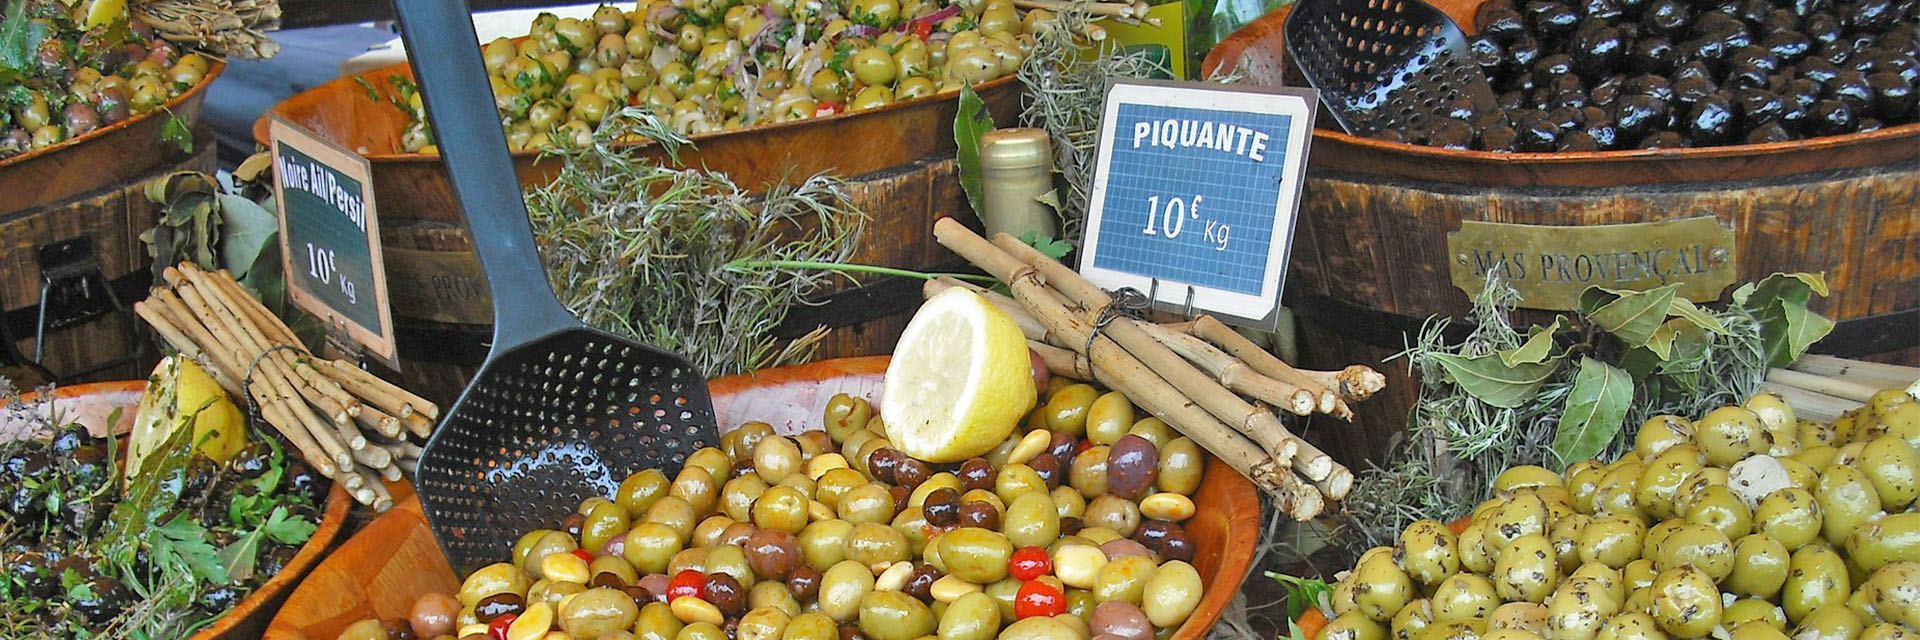 Route gastronomique olivier